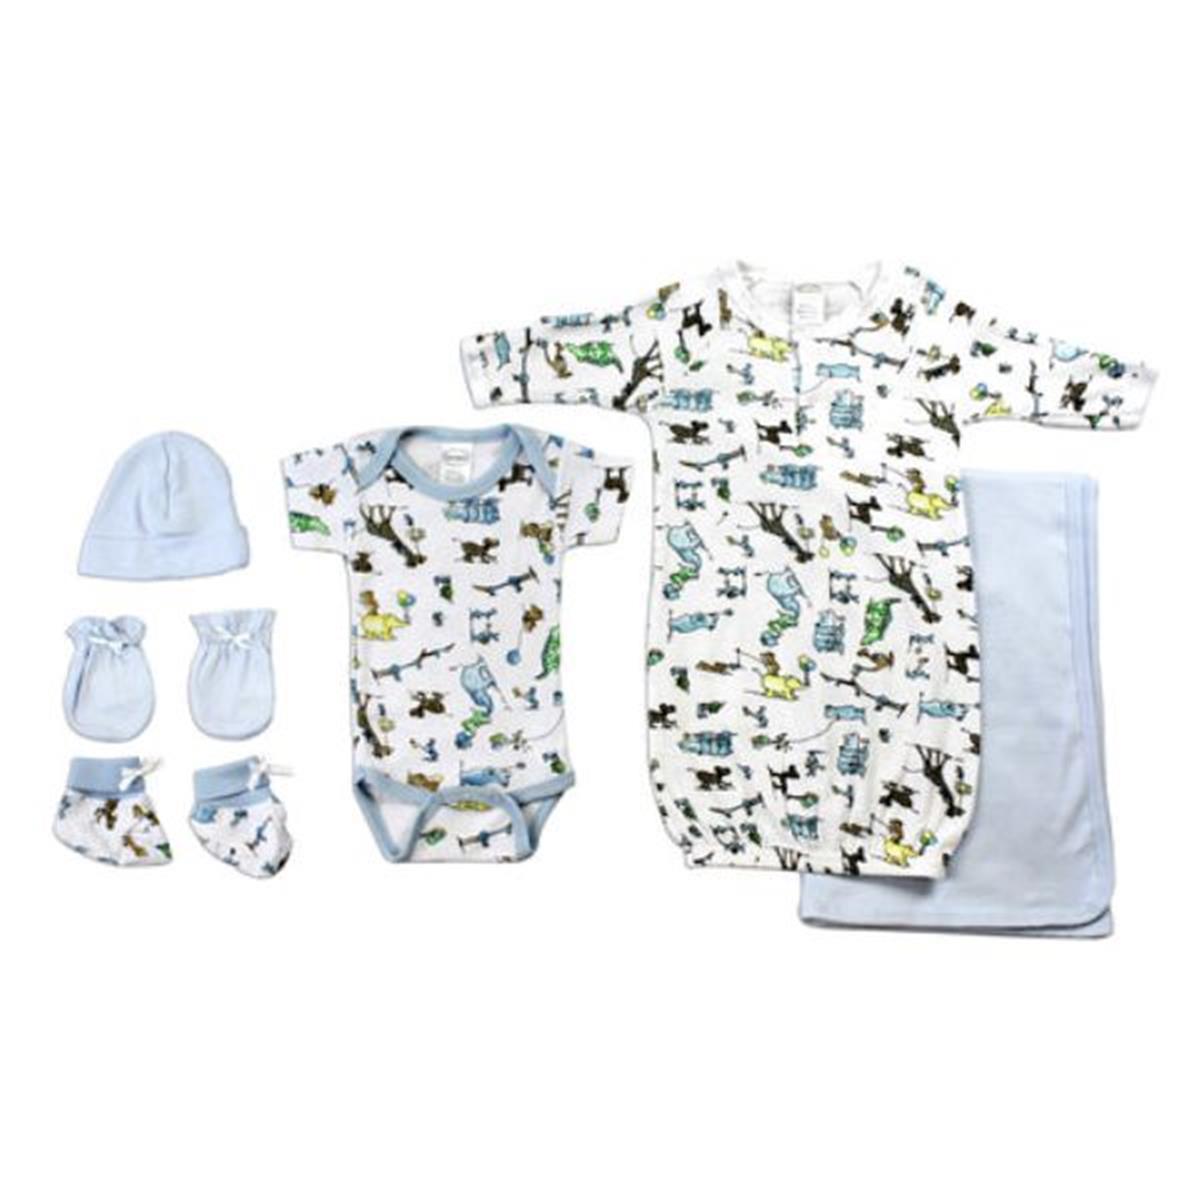 Bambini LS-0080 Newborn Baby Boys Layette Baby Shower Gift Set&#44; White & Blue - Newborn